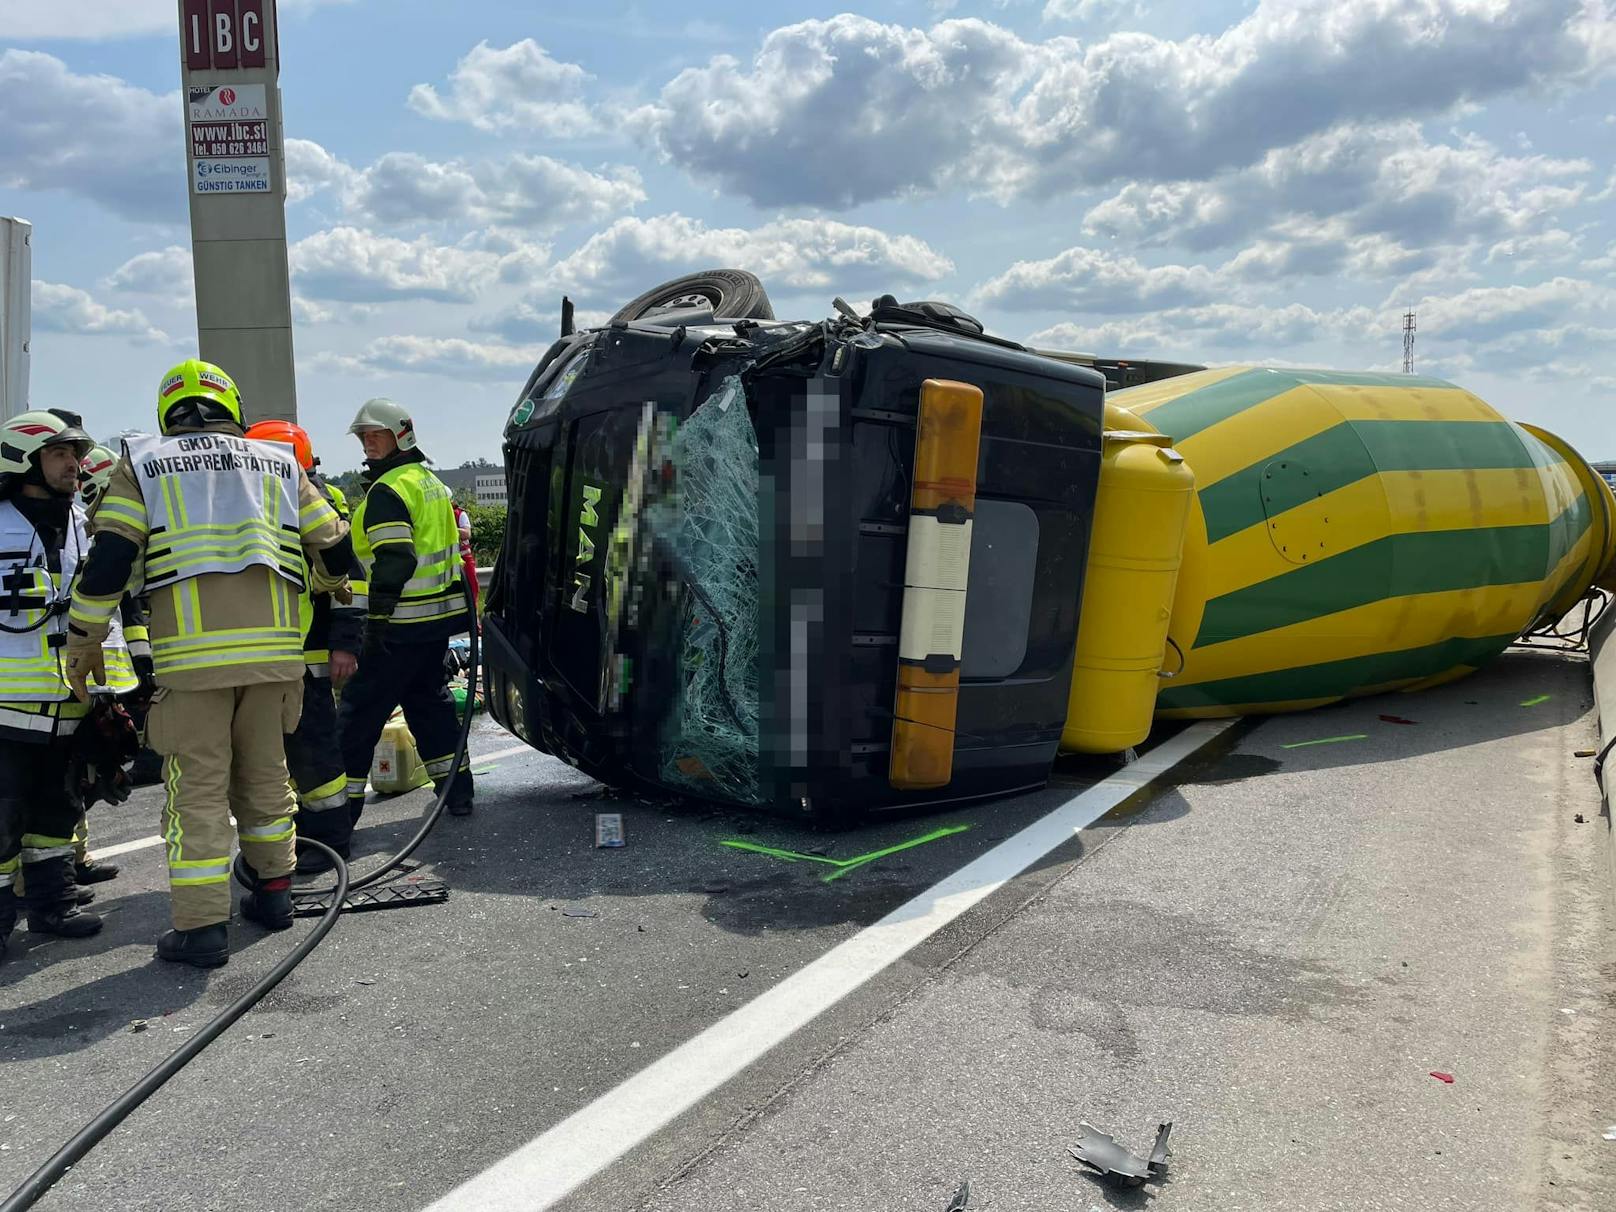 Im Rückstau eines Unfalls kam es auf der A9 südlich von Graz zu einem zweiten, tödlichen Crash. Ein Lieferwagen wurde zwischen zwei Lkw völlig zerquetscht. Für die Lenkerin kam jede Hilfe zu spät.